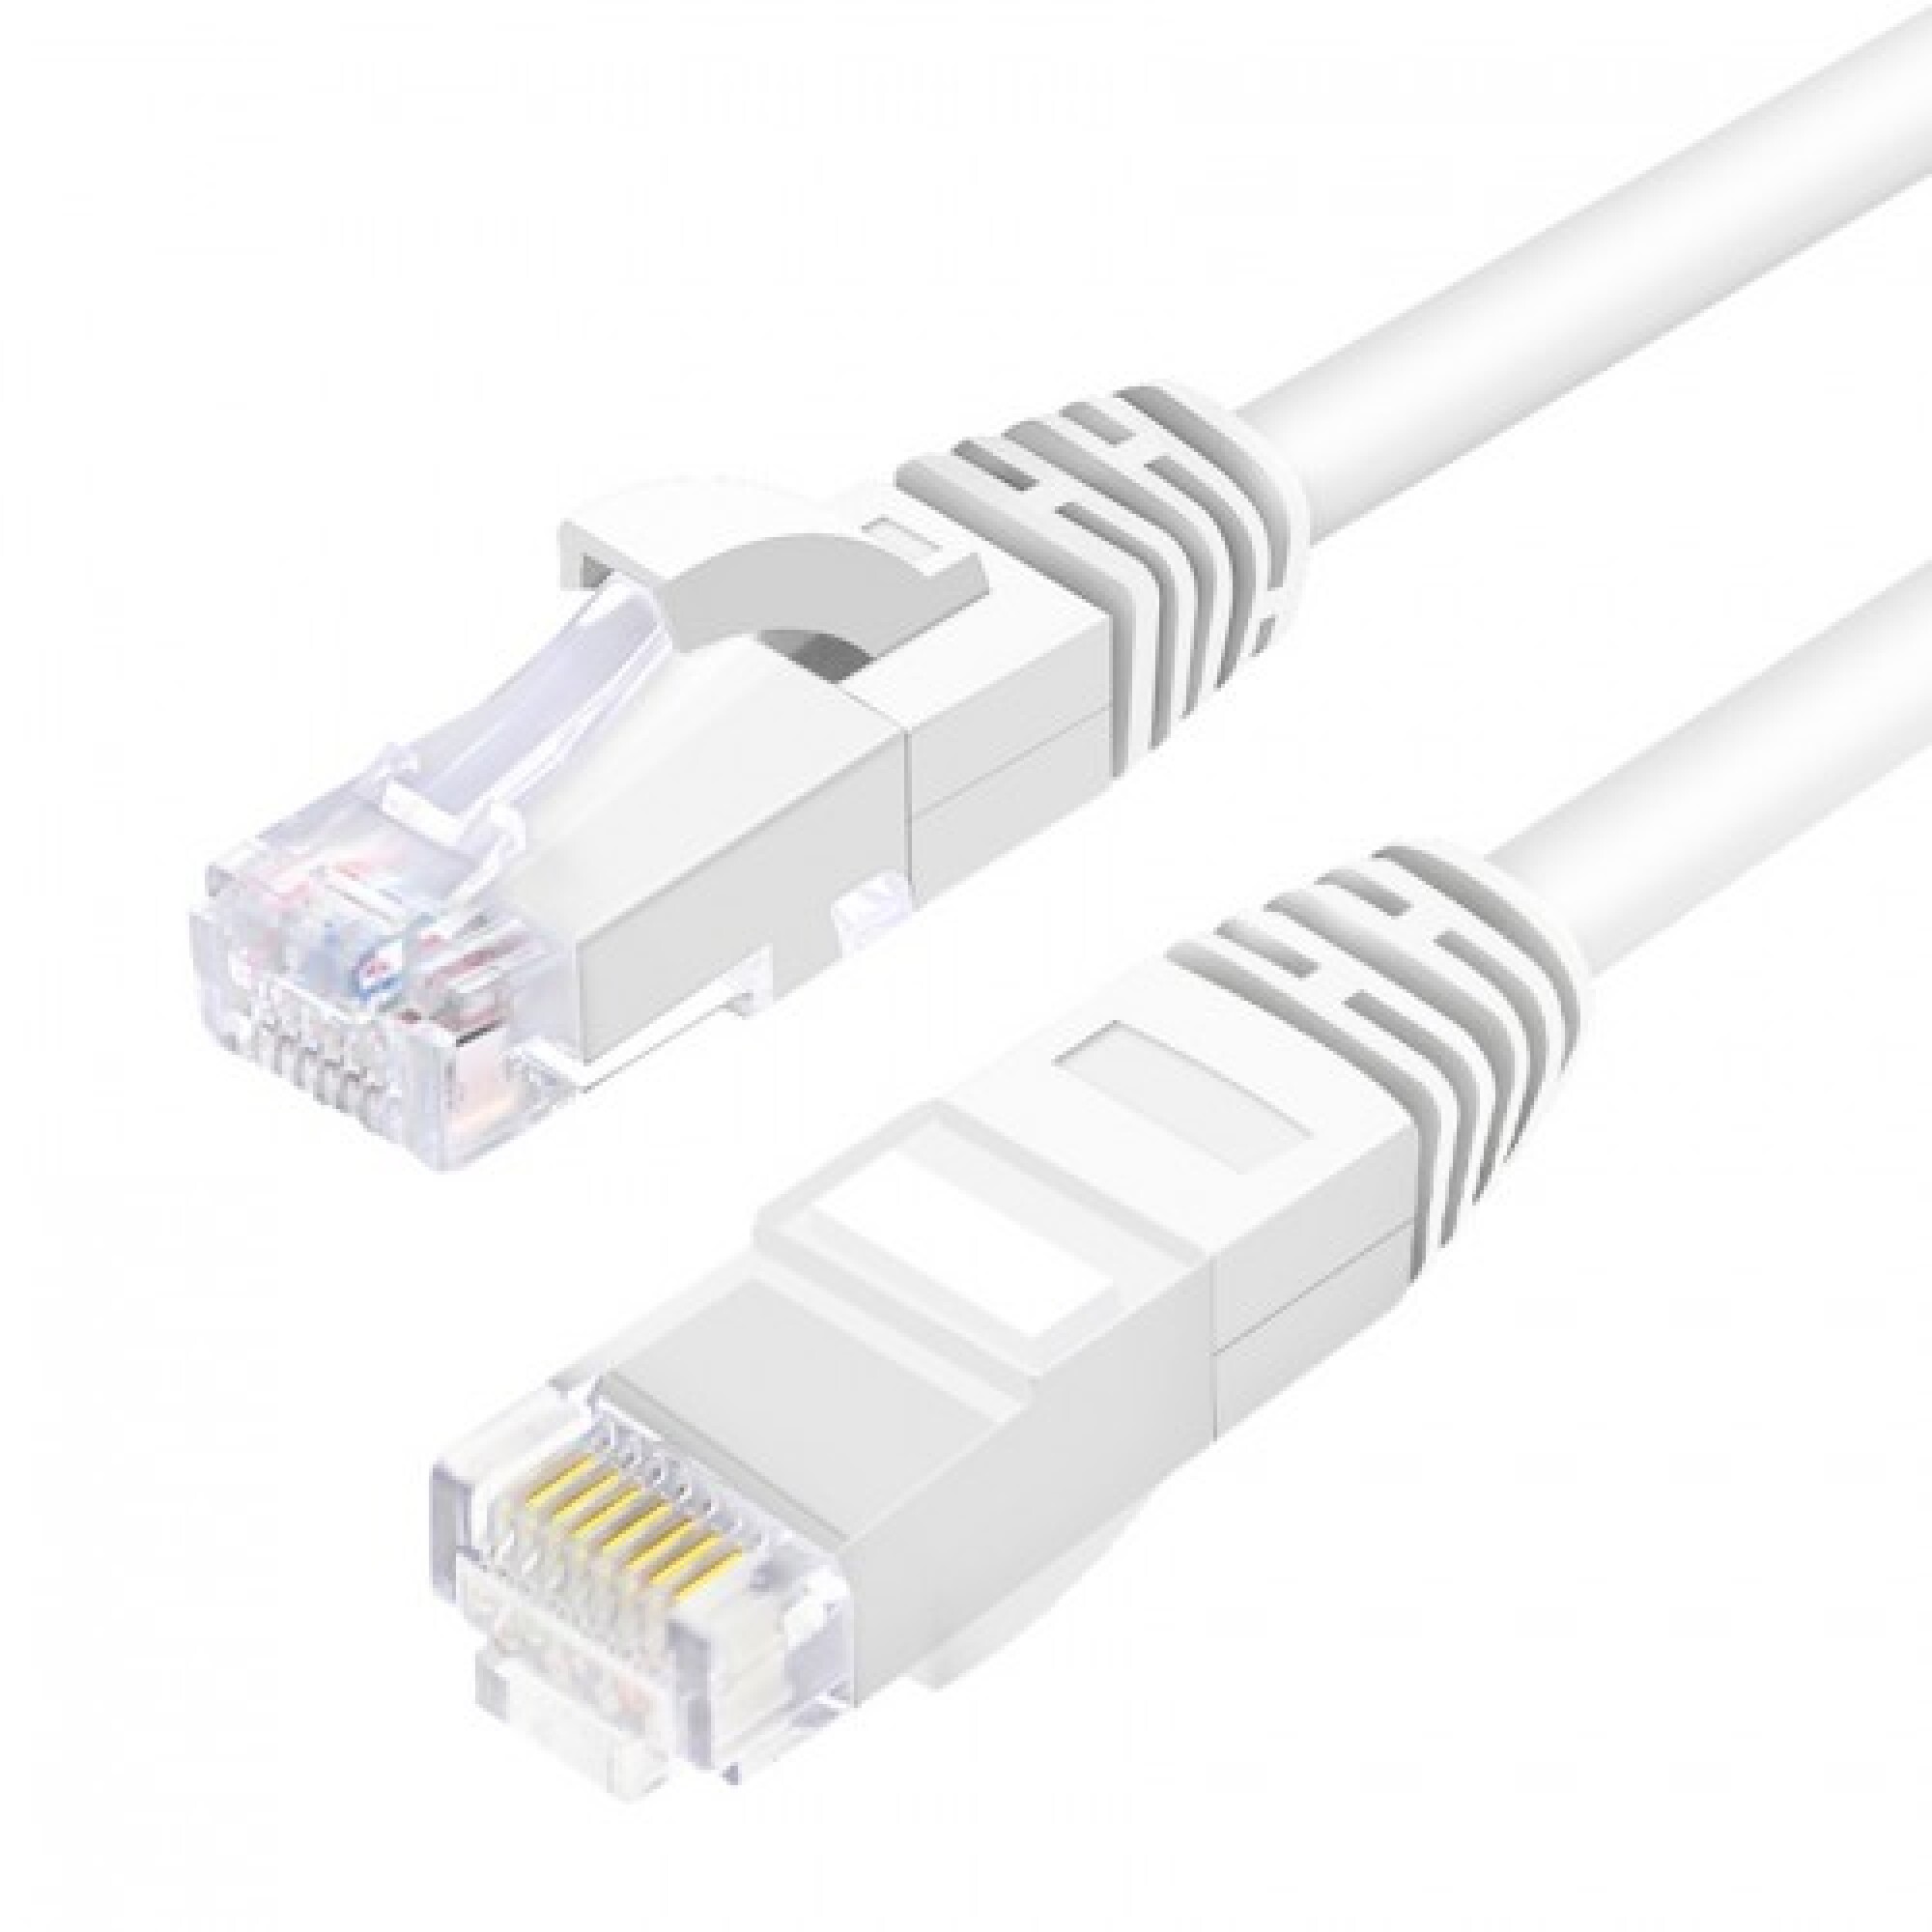 Cable De Red Ethernet Internet 20 Metros Rj45 Cat 7 Plano